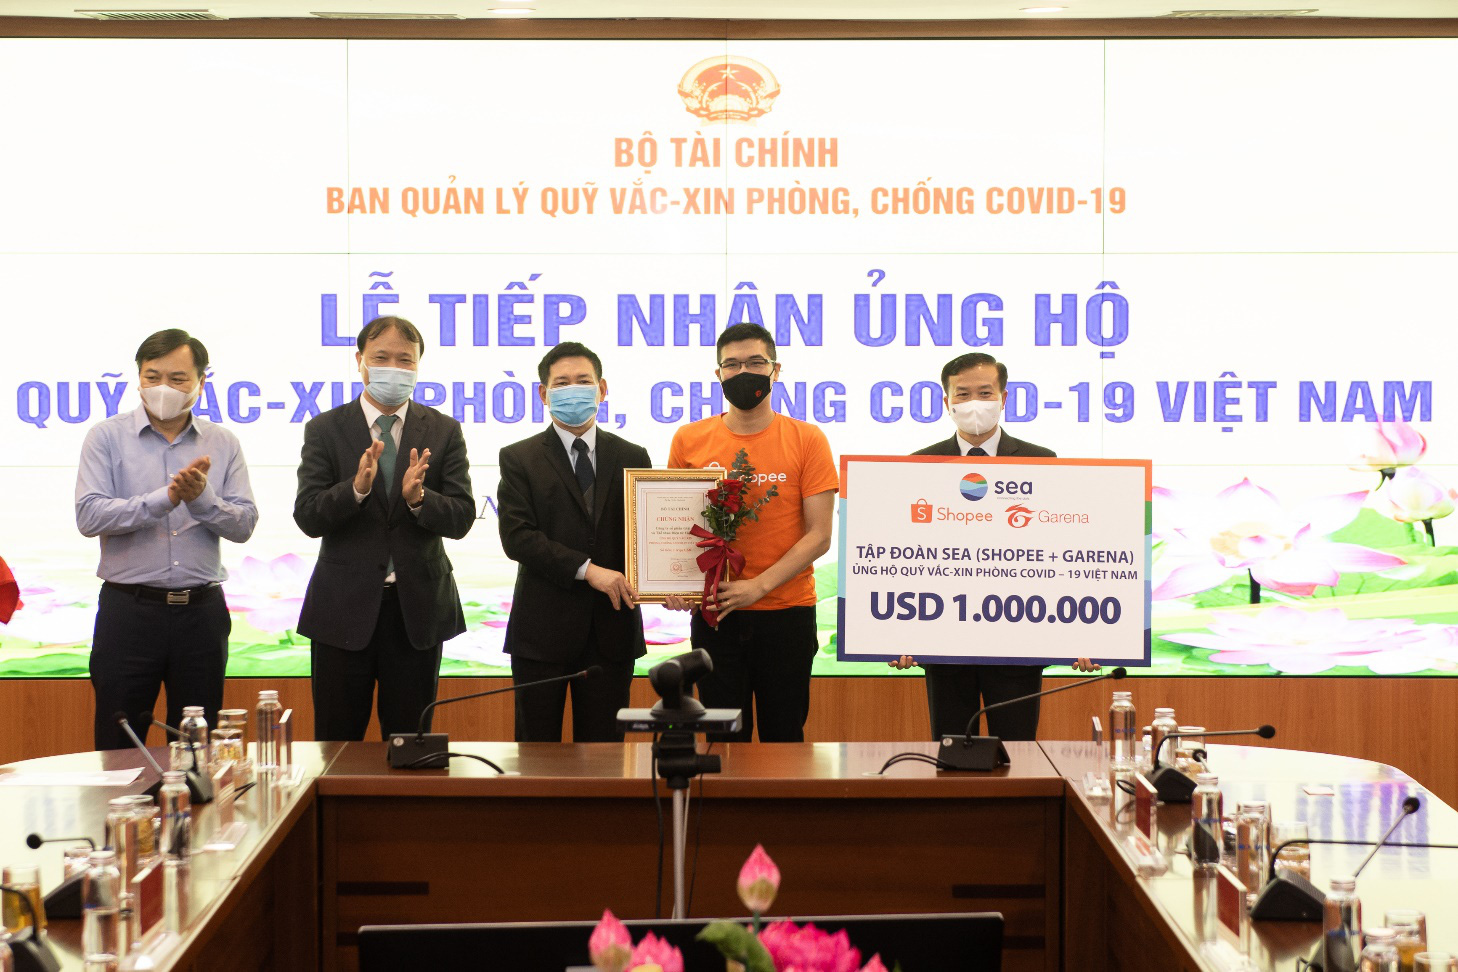 Shopee và Garena Việt Nam ủng hộ 1 triệu USD cho Quỹ vắc-xin phòng, chống Covid-19 - Ảnh 1.